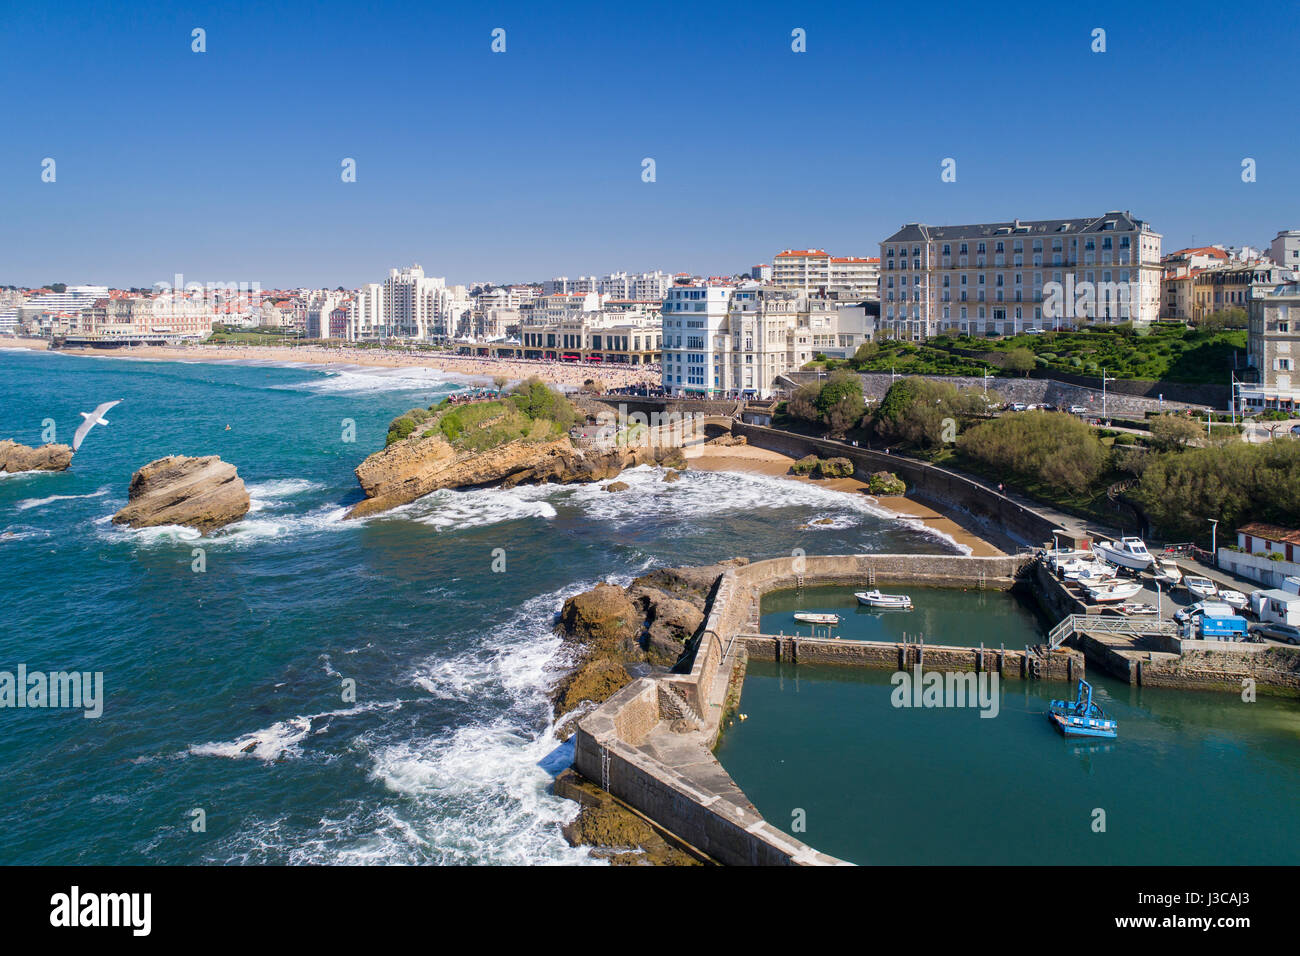 Biarritz es una ciudad sobre la bahía de Vizcaya, en la costa atlántica, en el departamento de Pirineos Atlánticos, región de Aquitania en el suroeste de Francia. Foto de stock